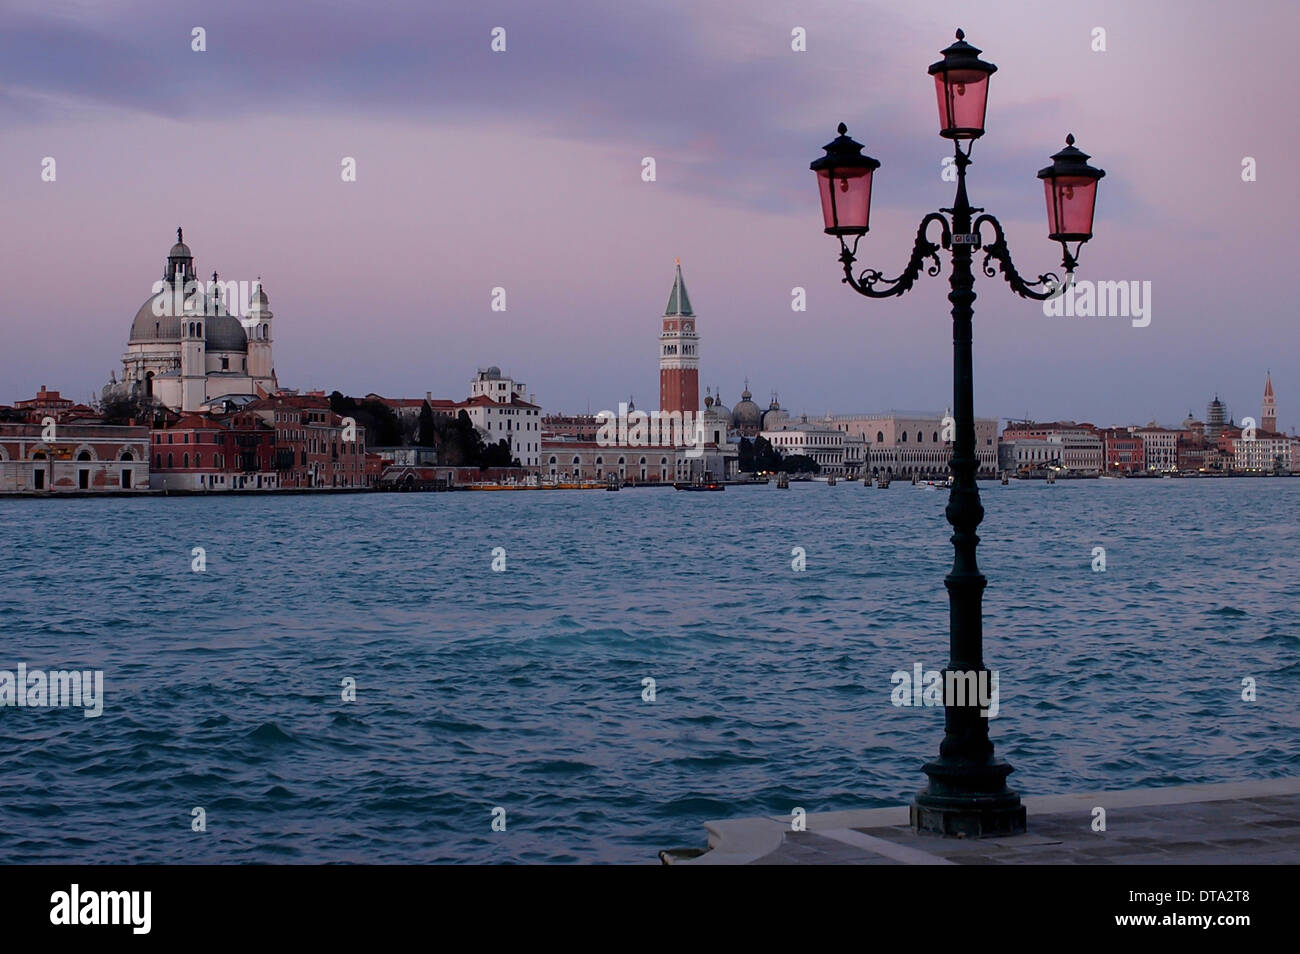 Moderna linterna veneciana, en frente del Palacio Ducal, el Palacio Ducal y el Campanile de San Marcos, en Venecia, Véneto, Italia Foto de stock